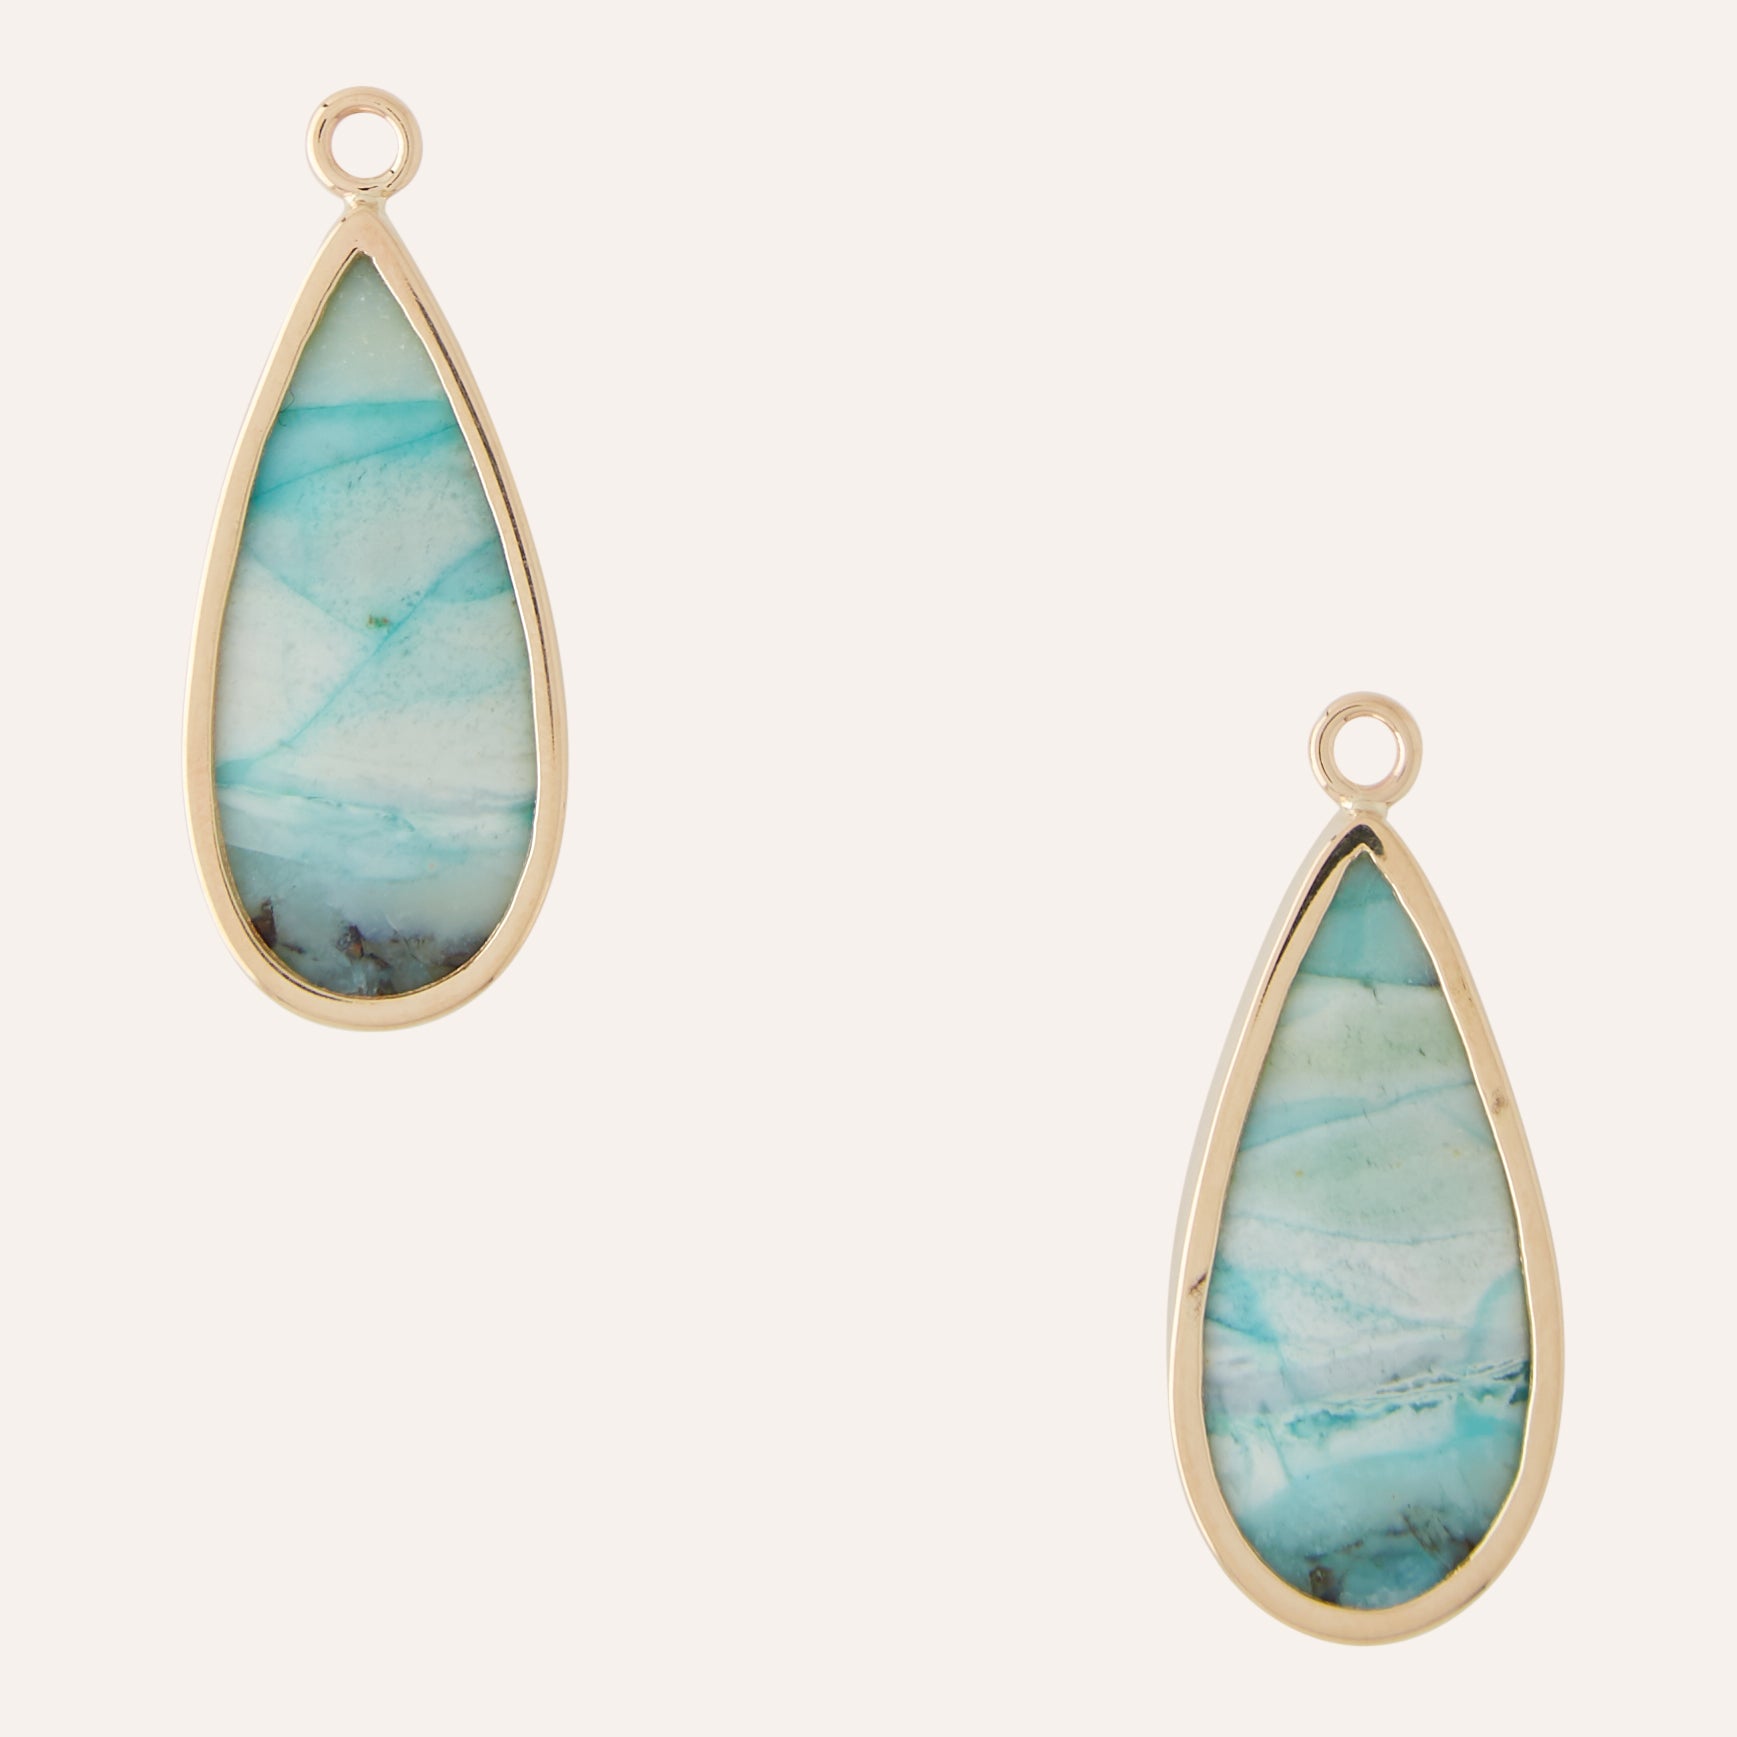 Blue Opal Fossil Teardrop Earring Drops